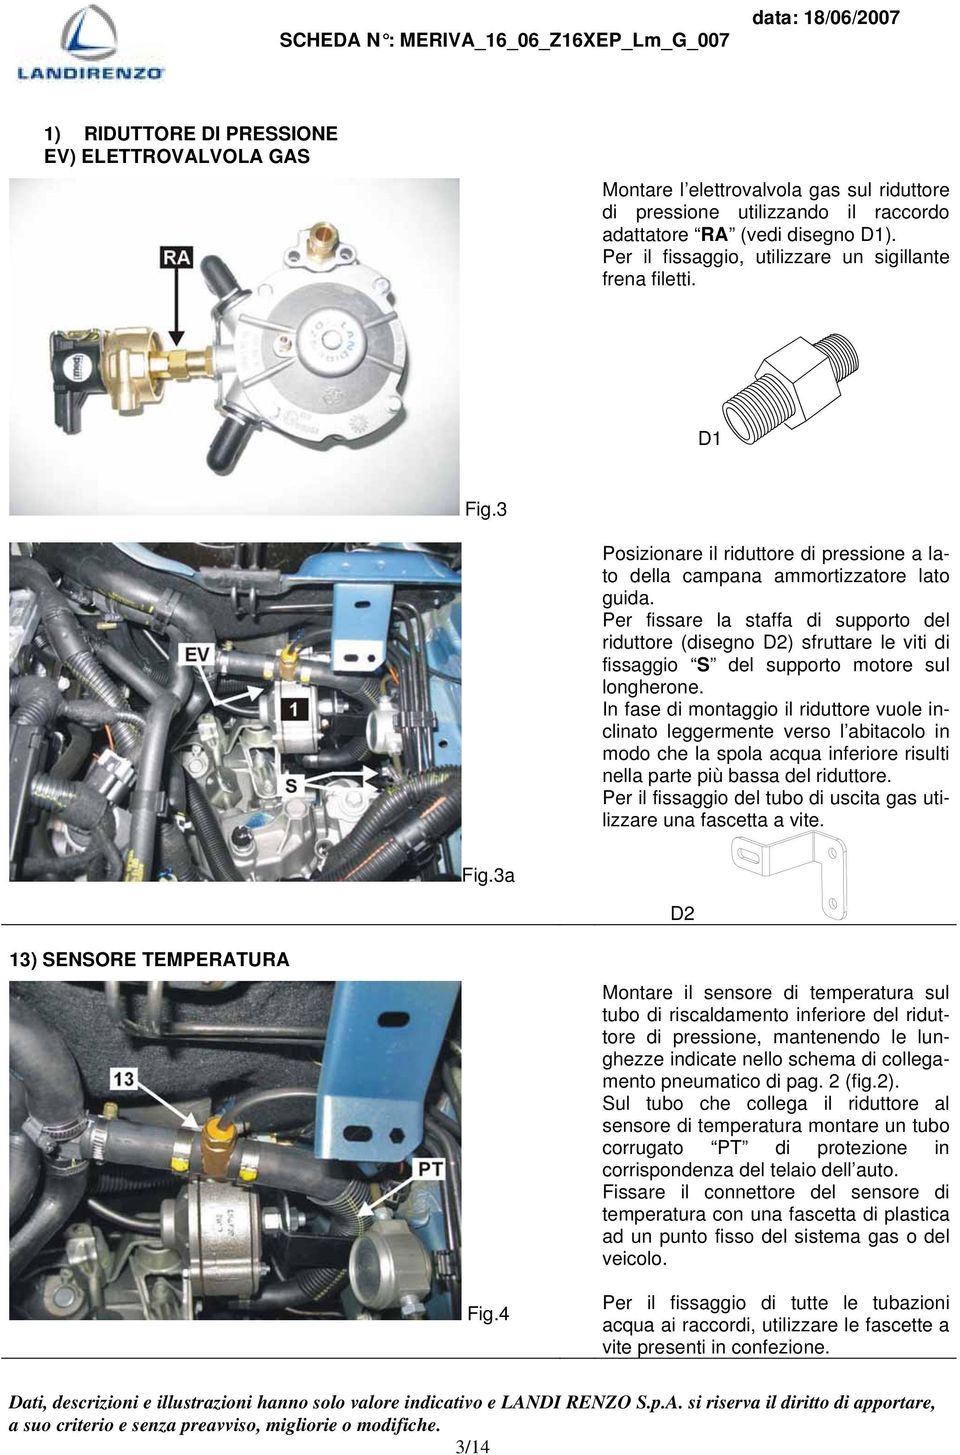 Per fissare la staffa di supporto del riduttore (disegno D2) sfruttare le viti di fissaggio S del supporto motore sul longherone.